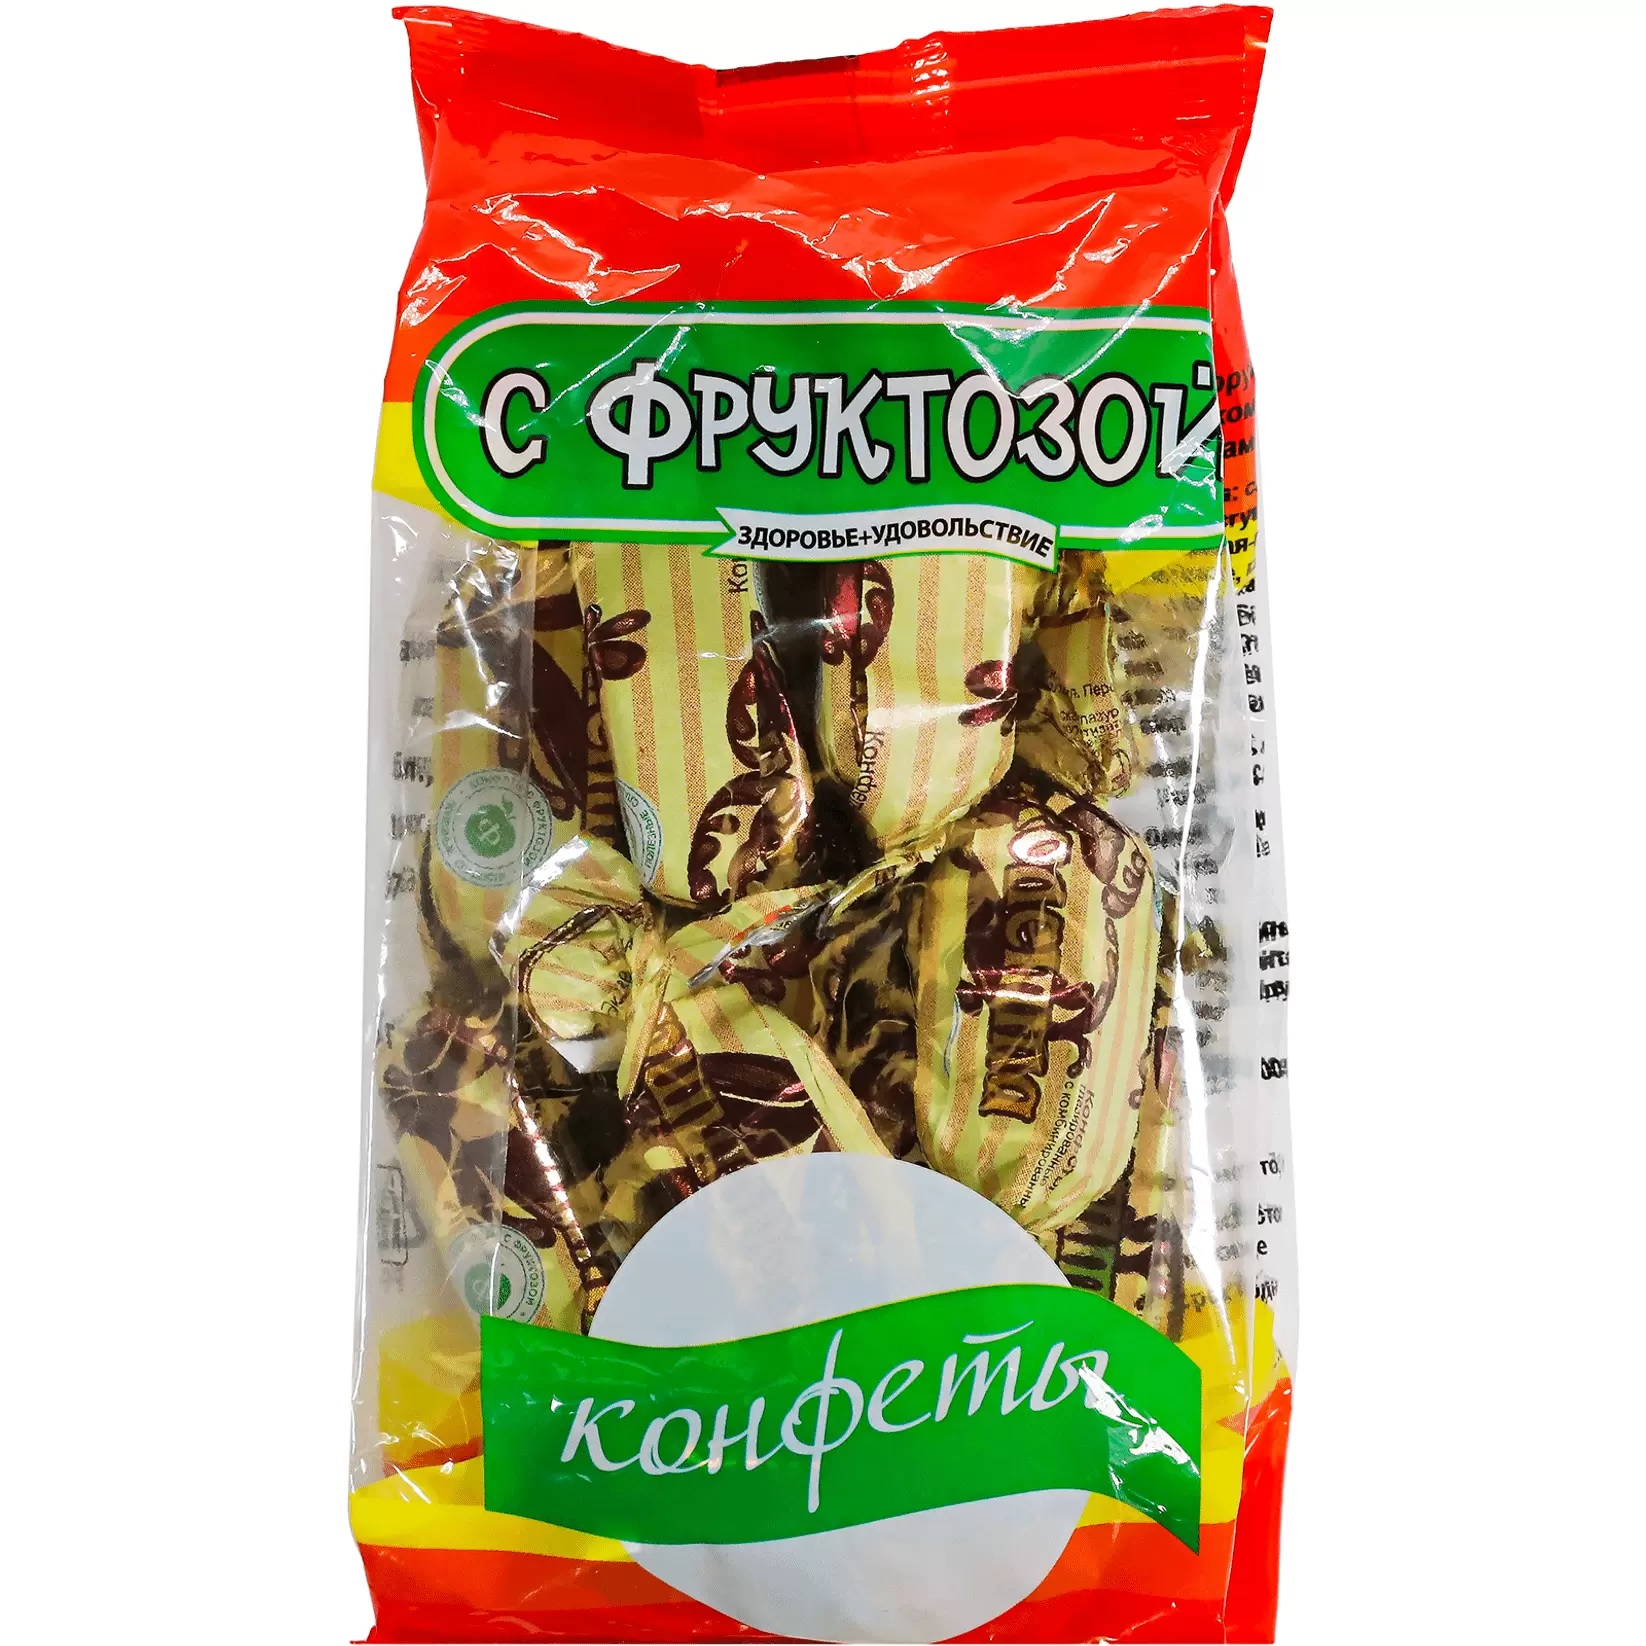 Конфеты Покровск Шоколетта, на фруктозе в глазури, 185 г х 2 шт